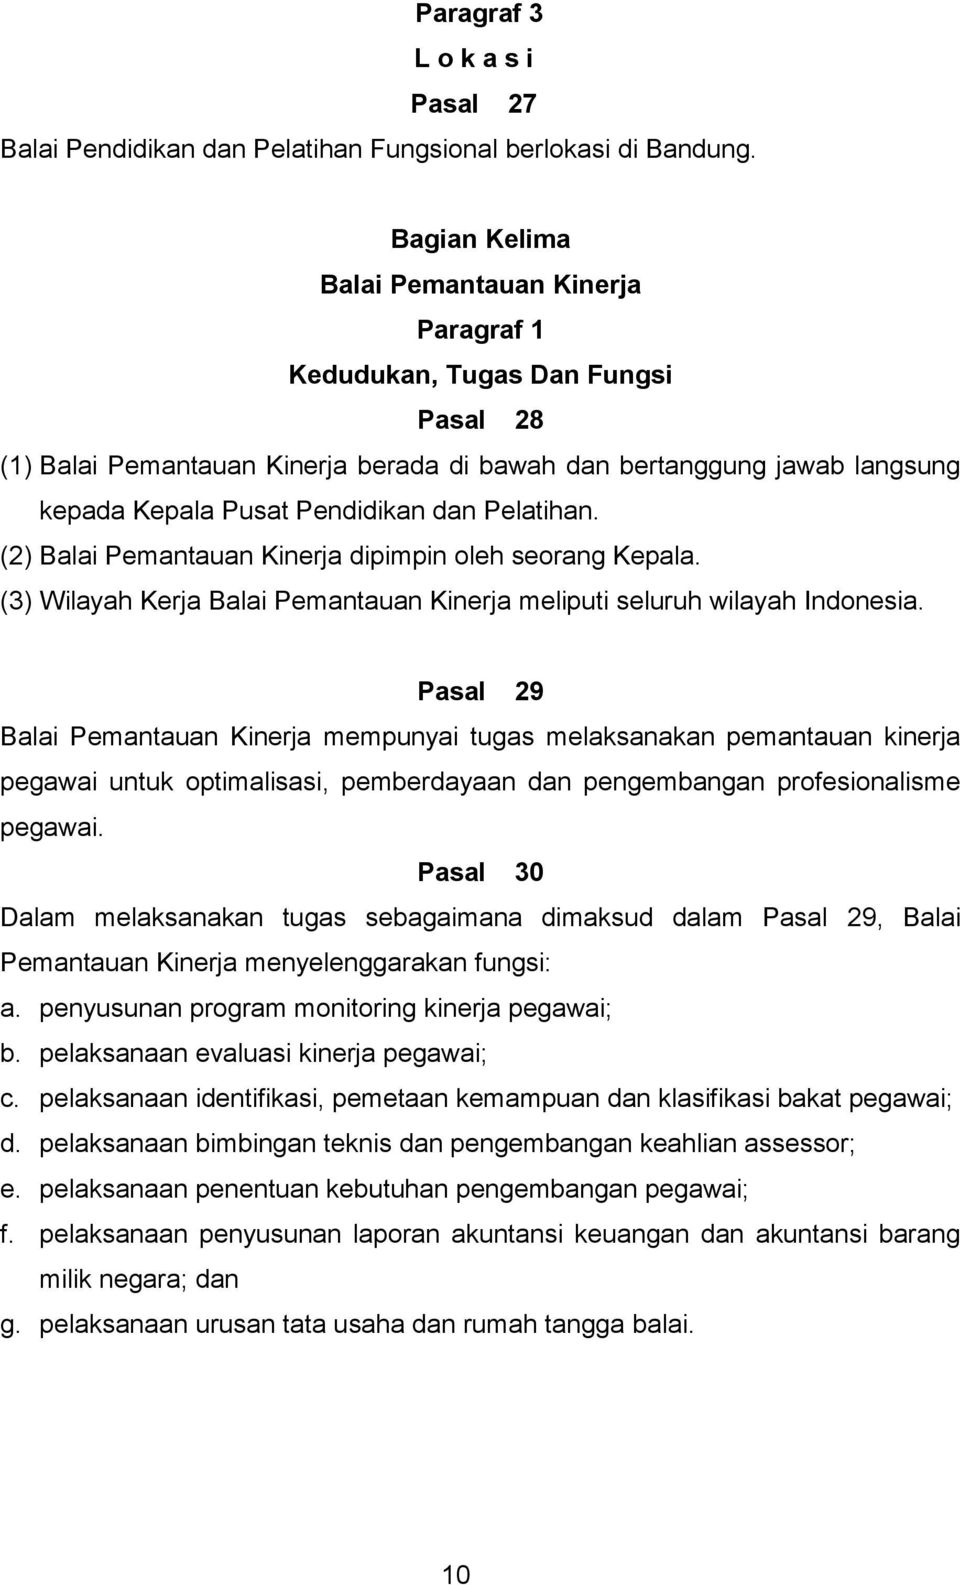 Pelatihan. (2) Balai Pemantauan Kinerja dipimpin oleh seorang Kepala. (3) Wilayah Kerja Balai Pemantauan Kinerja meliputi seluruh wilayah Indonesia.